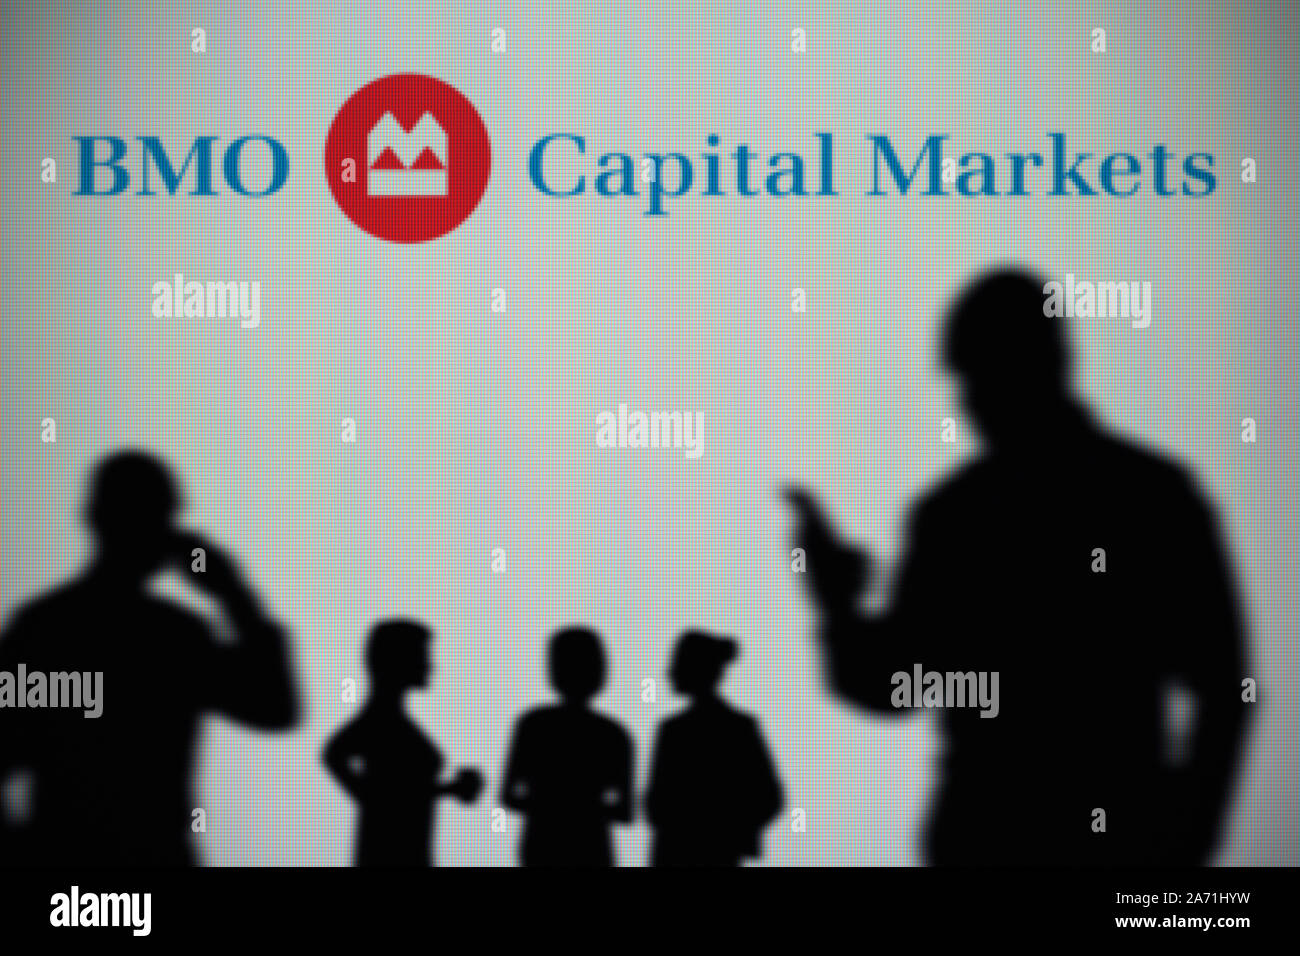 BMO Marchés des capitaux Le logo est visible sur un écran LED à l'arrière-plan tandis qu'une silhouette personne utilise un smartphone (usage éditorial uniquement) Banque D'Images